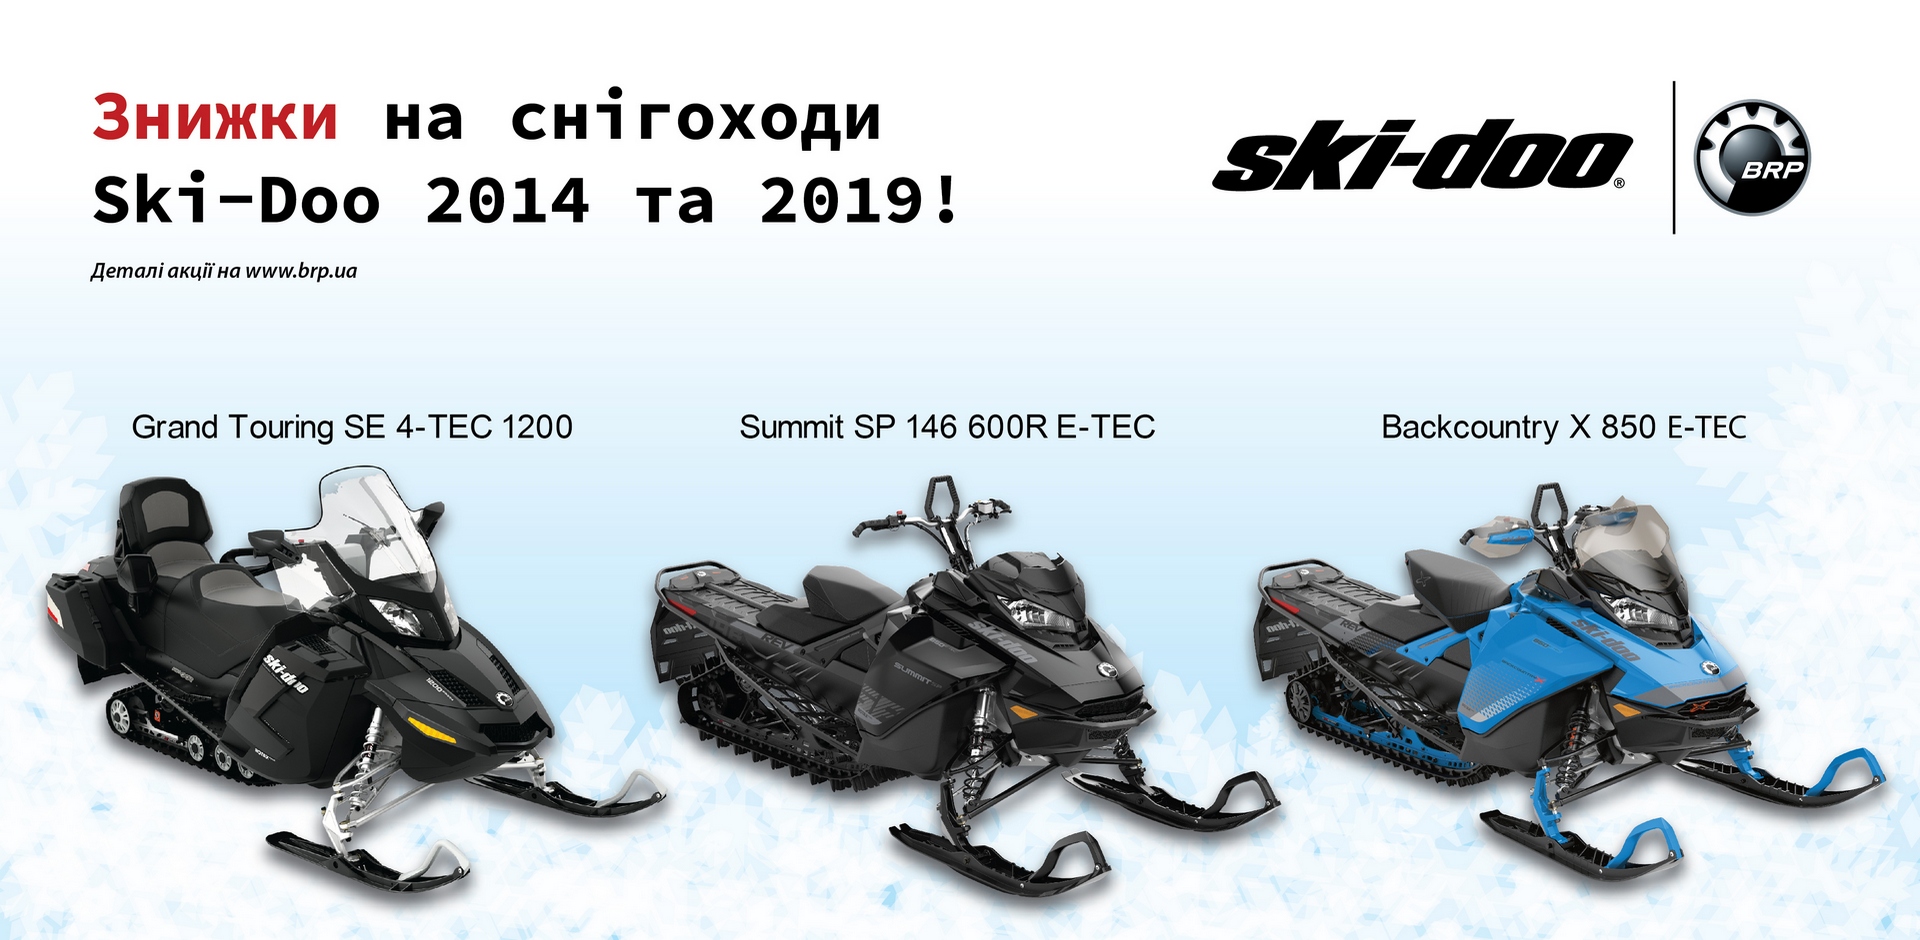 Знижки на снігоходи BRP Ski-Doo 2014 та 2019!